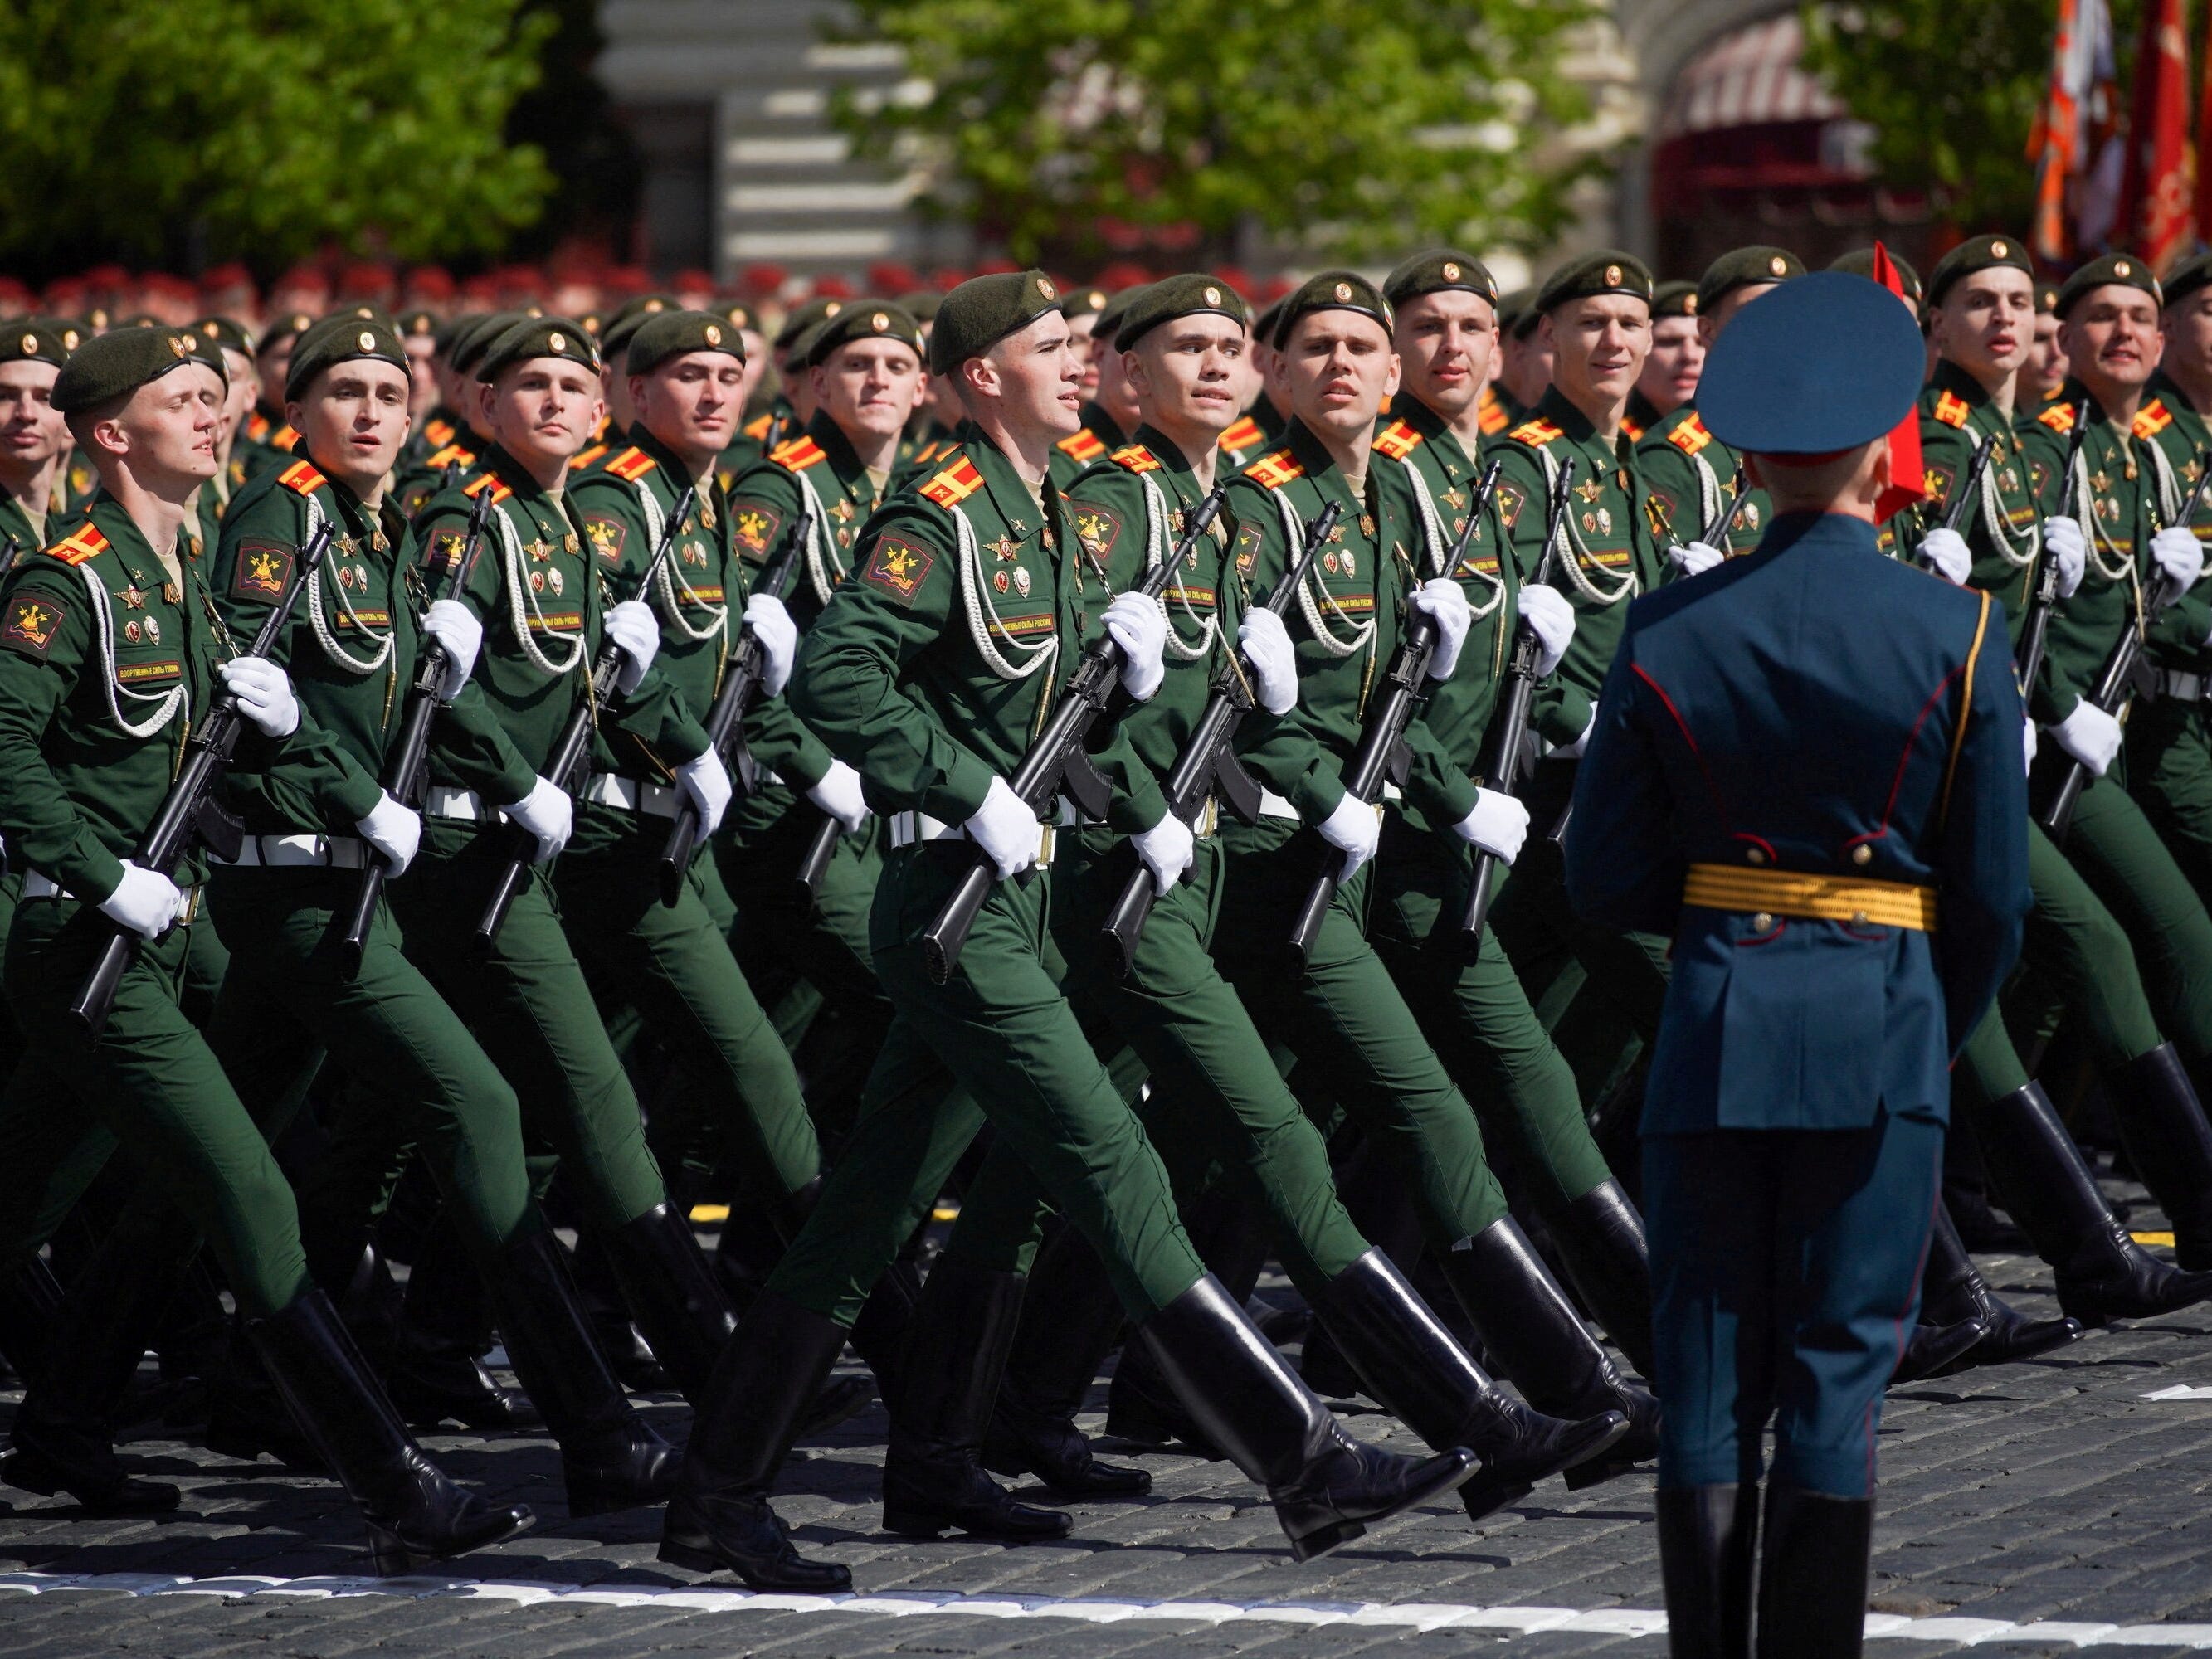 Russische Soldaten marschieren gemeinsam unter der Aufsicht eines hochrangigen Militärbeamten.